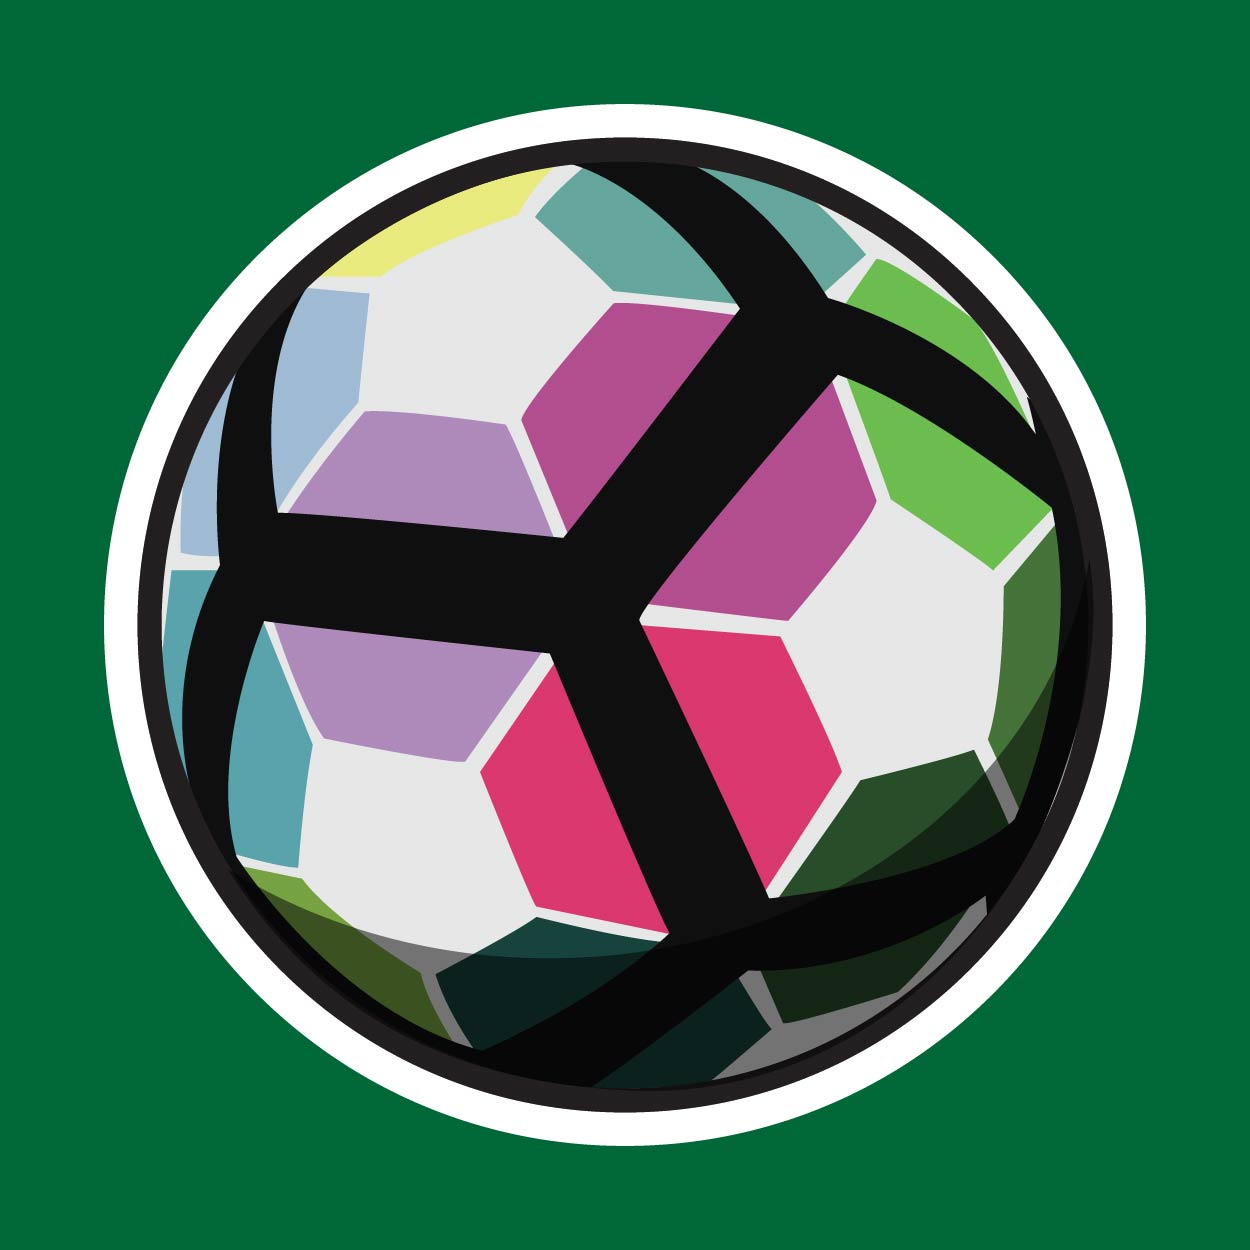 Flat design soccer ball series.